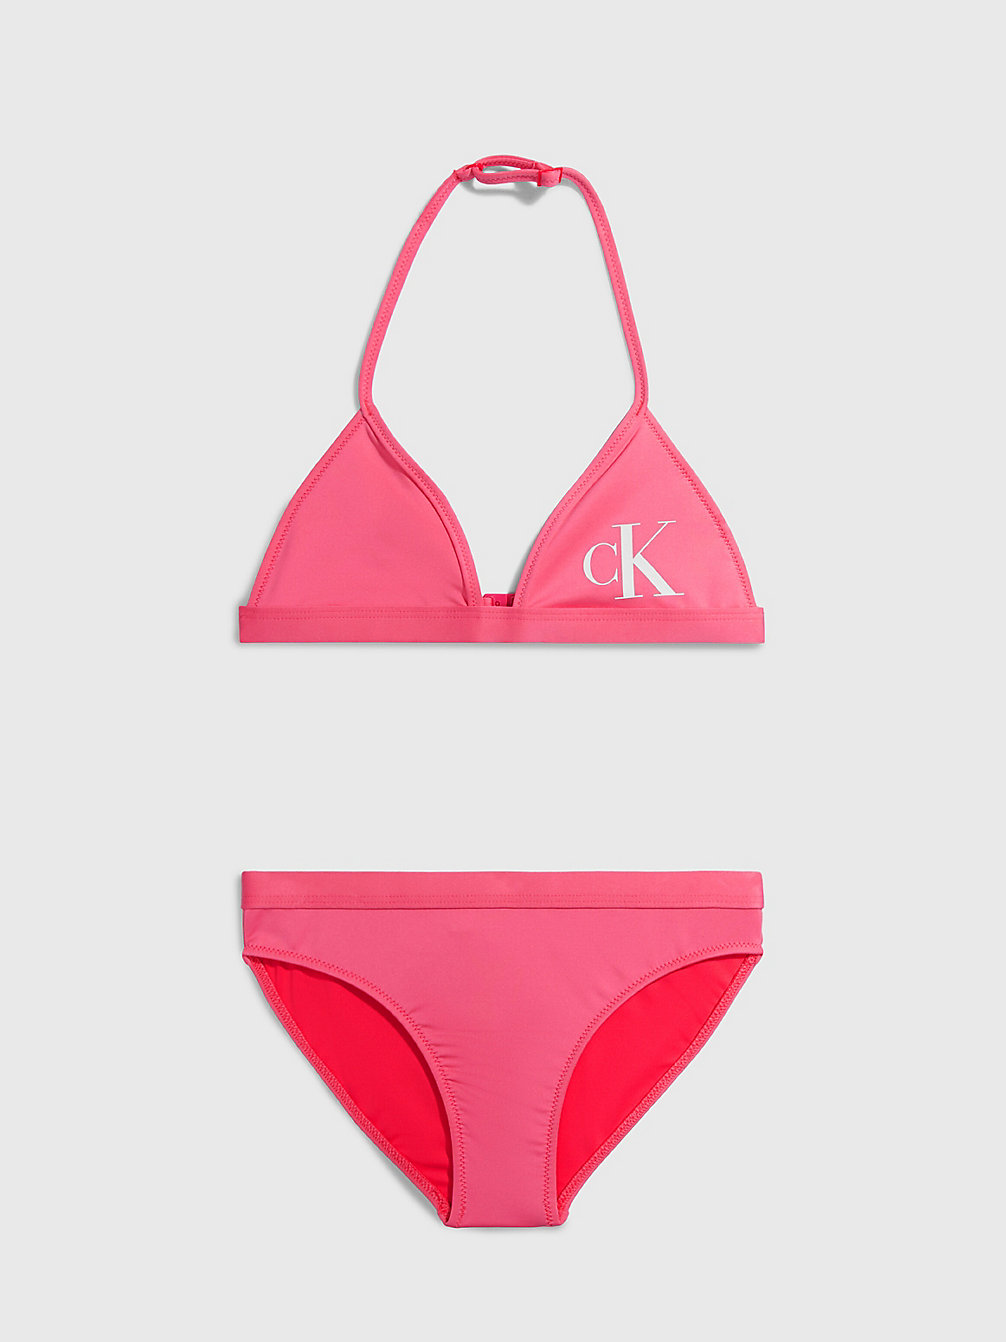 PINK FLASH Bikini-Set Mit Triangel-Top Für Mädchen - CK Monogram undefined girls Calvin Klein